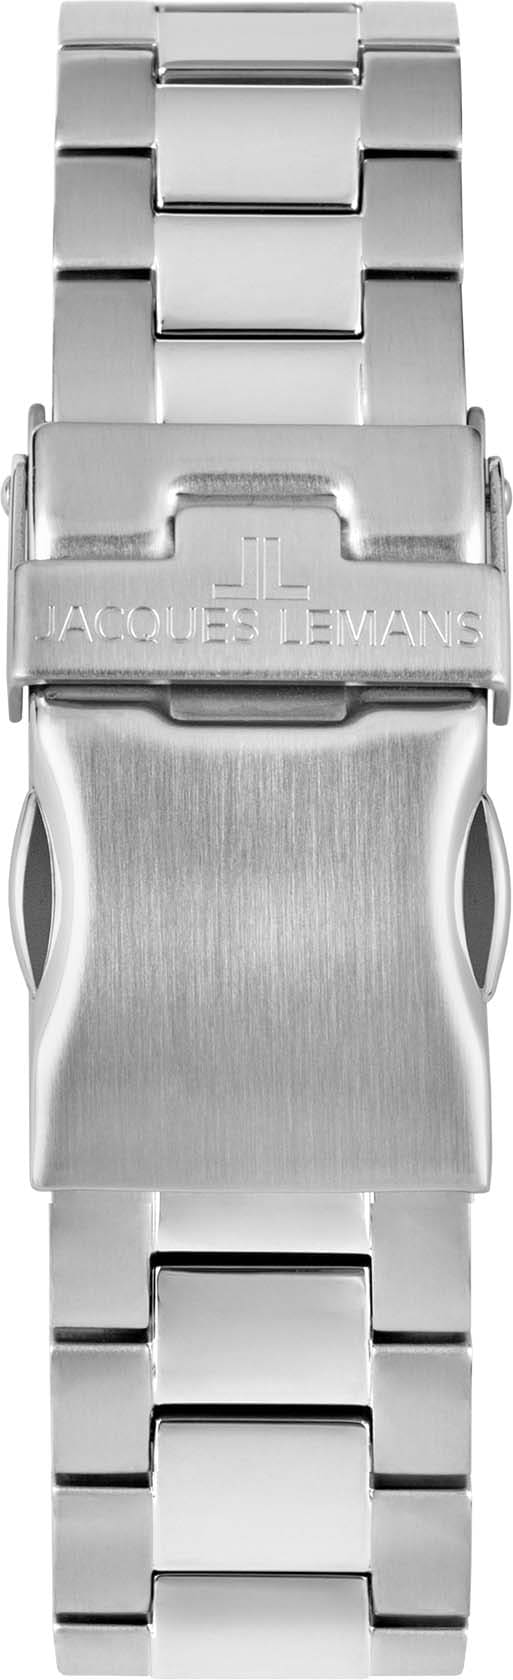 Jacques Lemans Chronograph »Barcelona, 42-2D«, Quarzuhr, Armbanduhr, Herrenuhr, Stoppfunktion